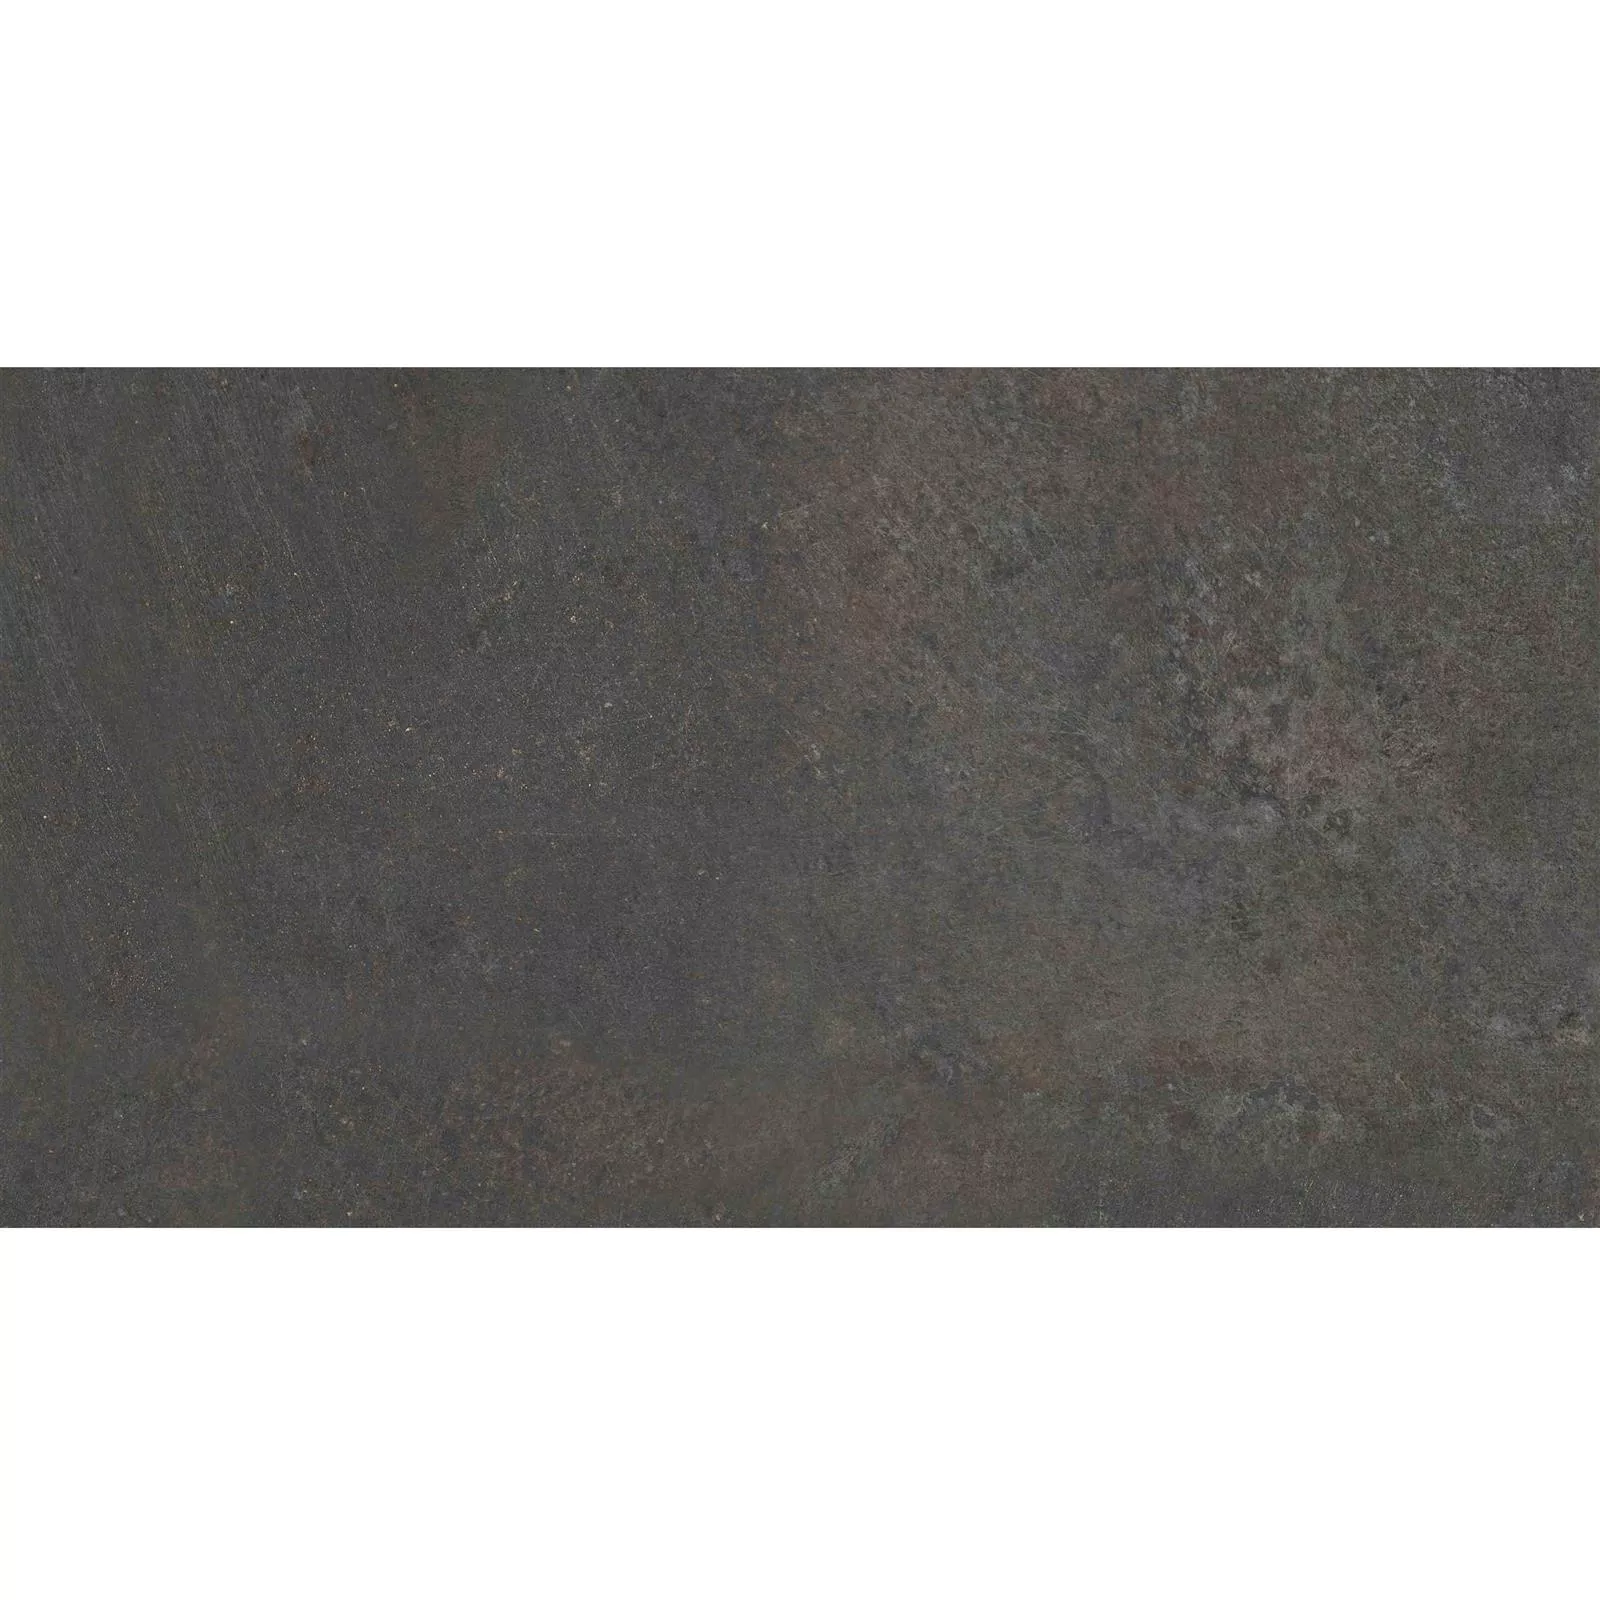 Πρότυπο Πλακάκια Δαπέδου Peaceway Ανθρακίτης 30x60cm